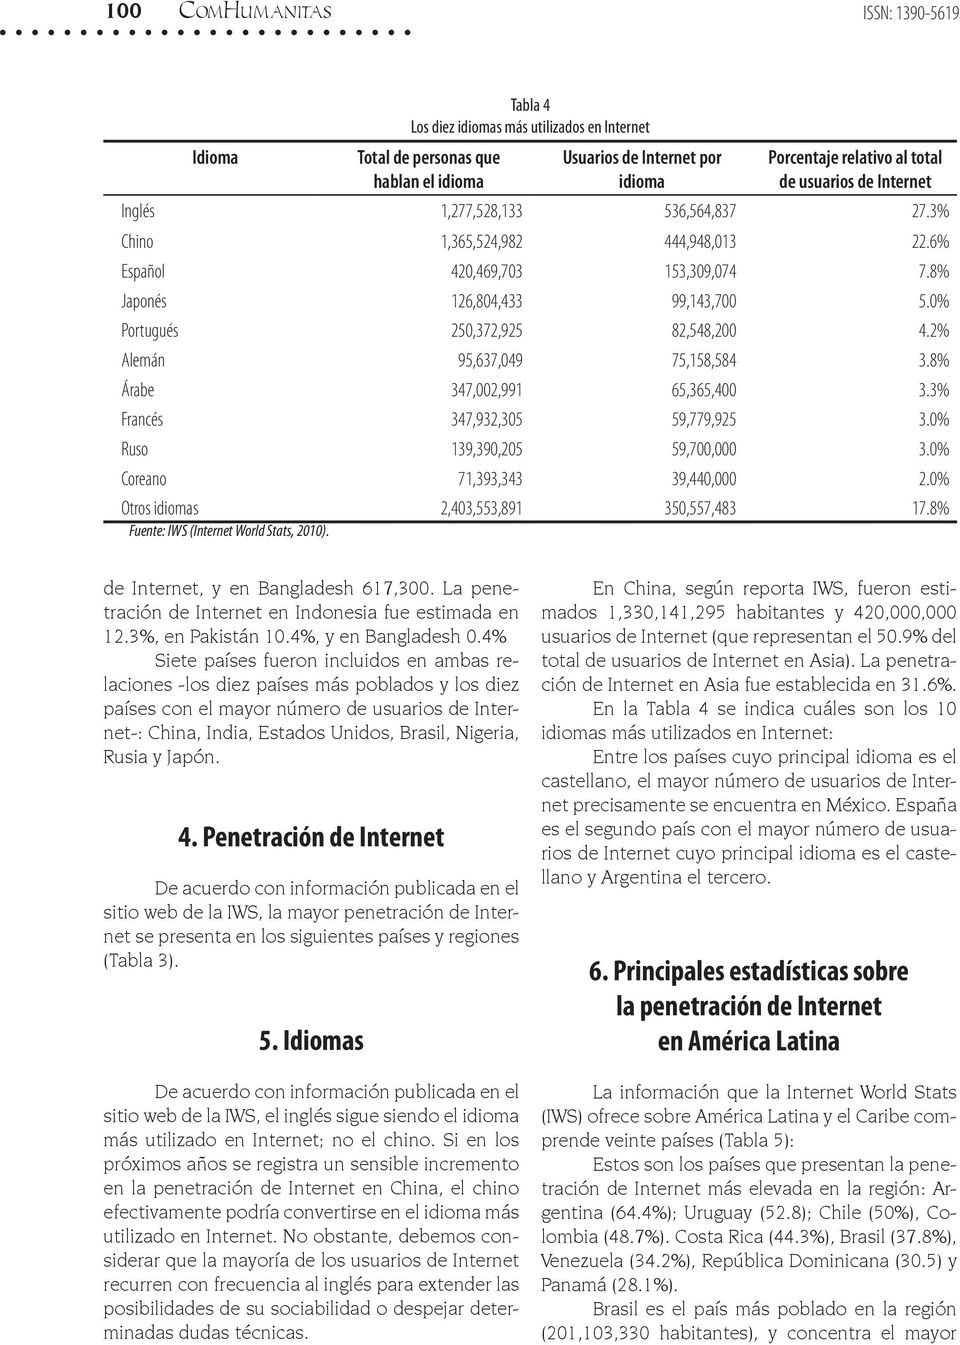 0% Portugués 250,372,925 82,548,200 4.2% Alemán 95,637,049 75,158,584 3.8% Árabe 347,002,991 65,365,400 3.3% Francés 347,932,305 59,779,925 3.0% Ruso 139,390,205 59,700,000 3.